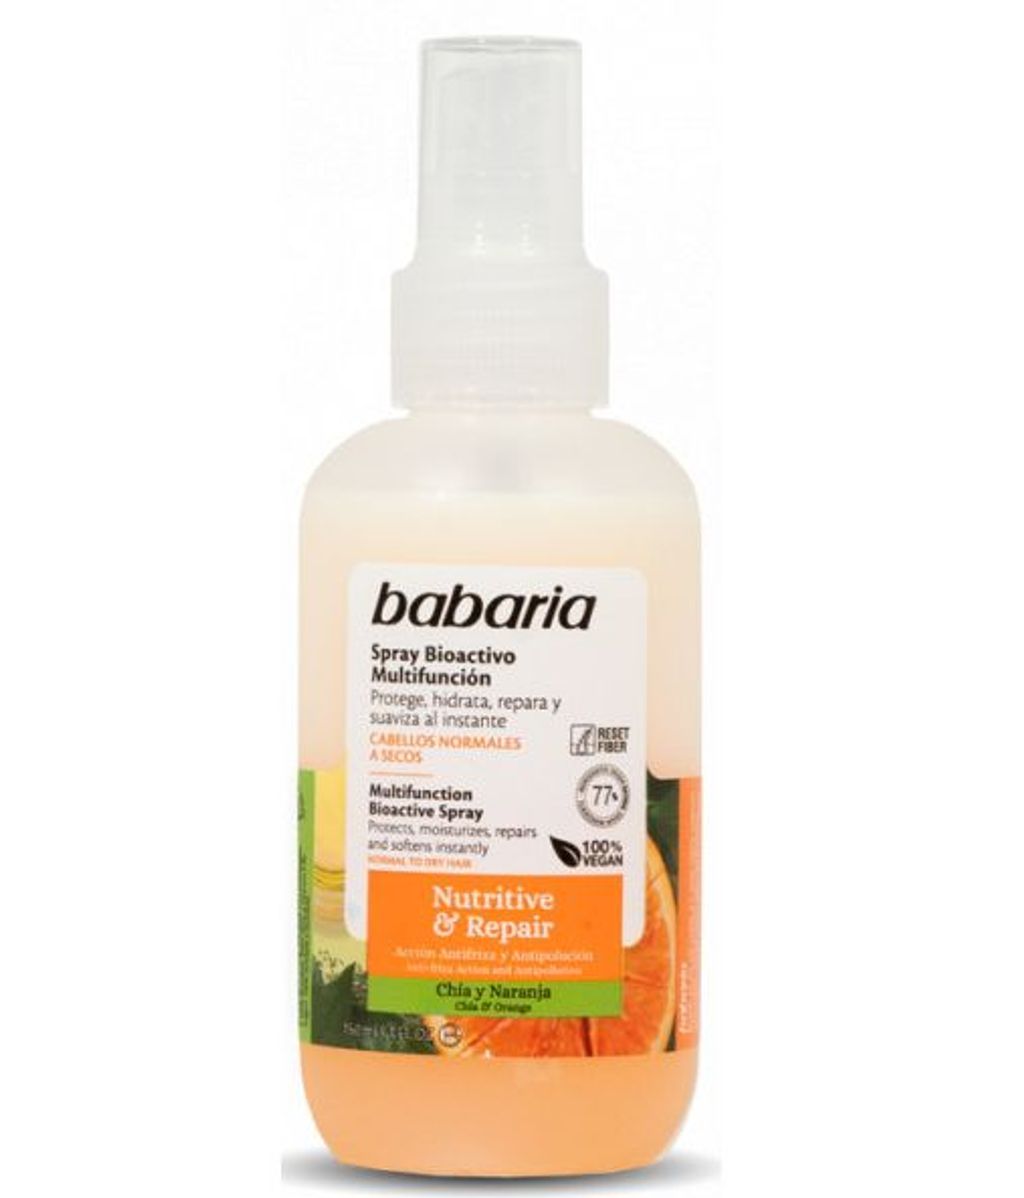 Nutritive & Repair Spray Bioactivo Multifunción de Babaria